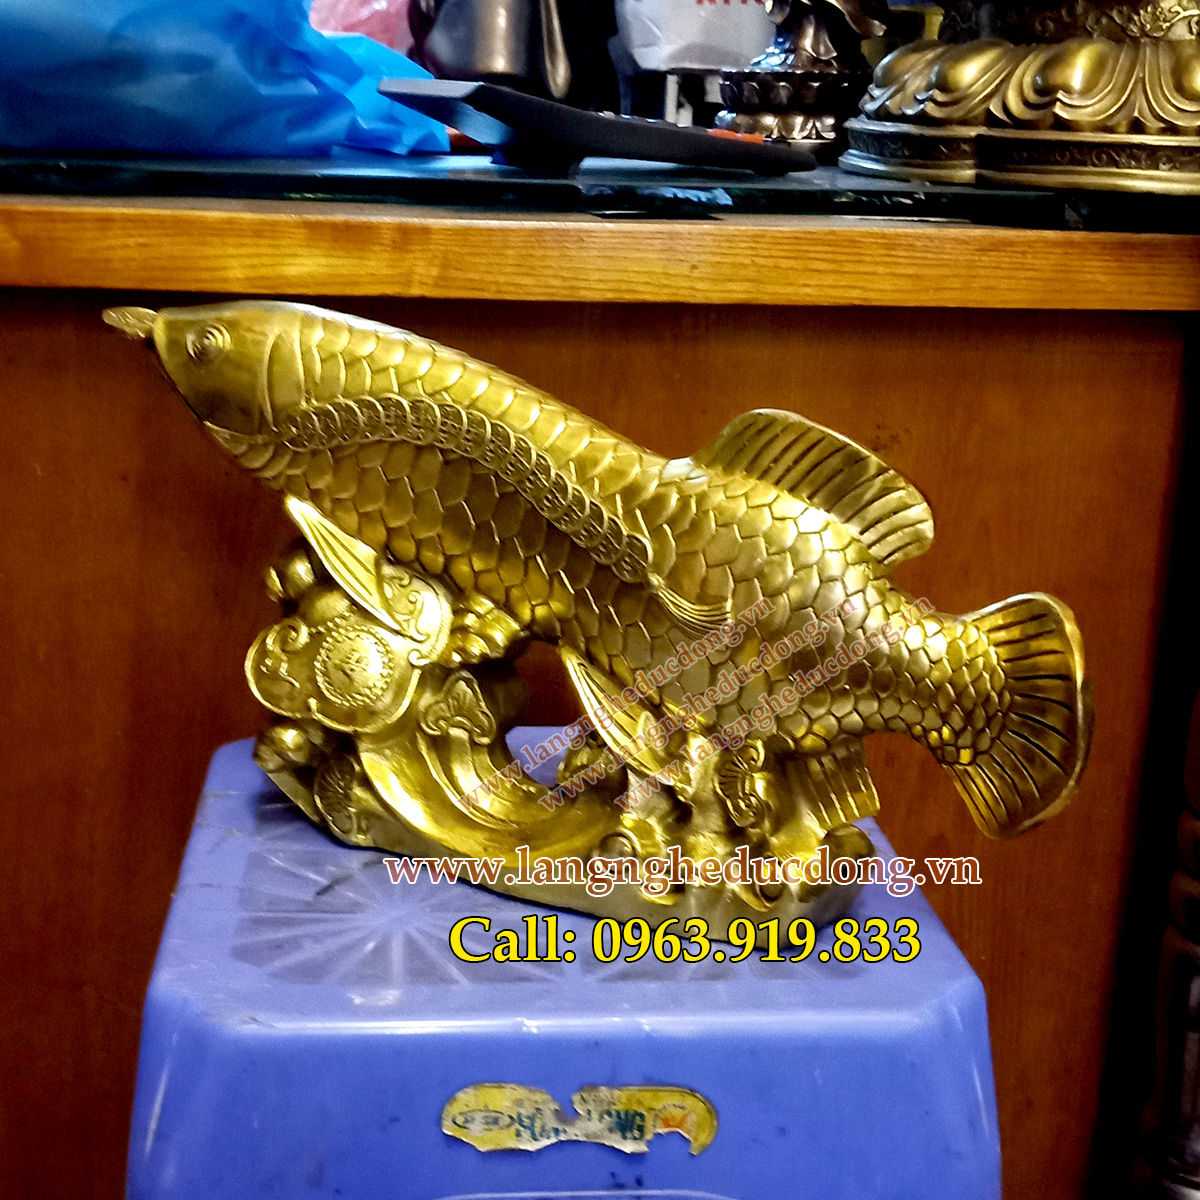 Tượng cá rồng bằng đồng, kim long bằng đồng, bán tượng cá rồng, giá tượng cá rồng